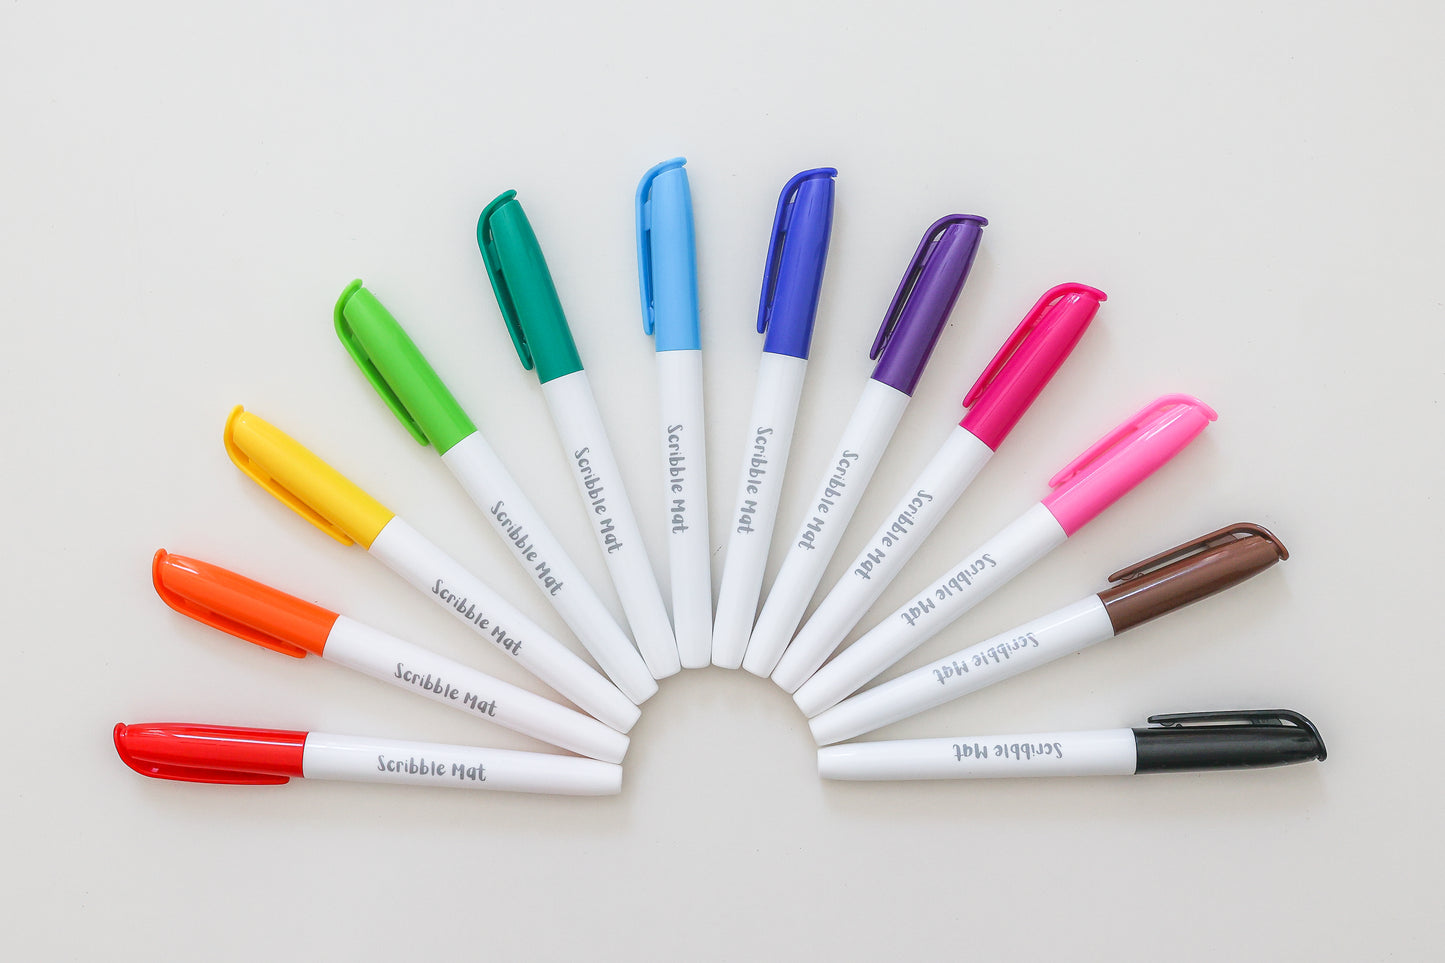 Scribble Mat - 12 Pens